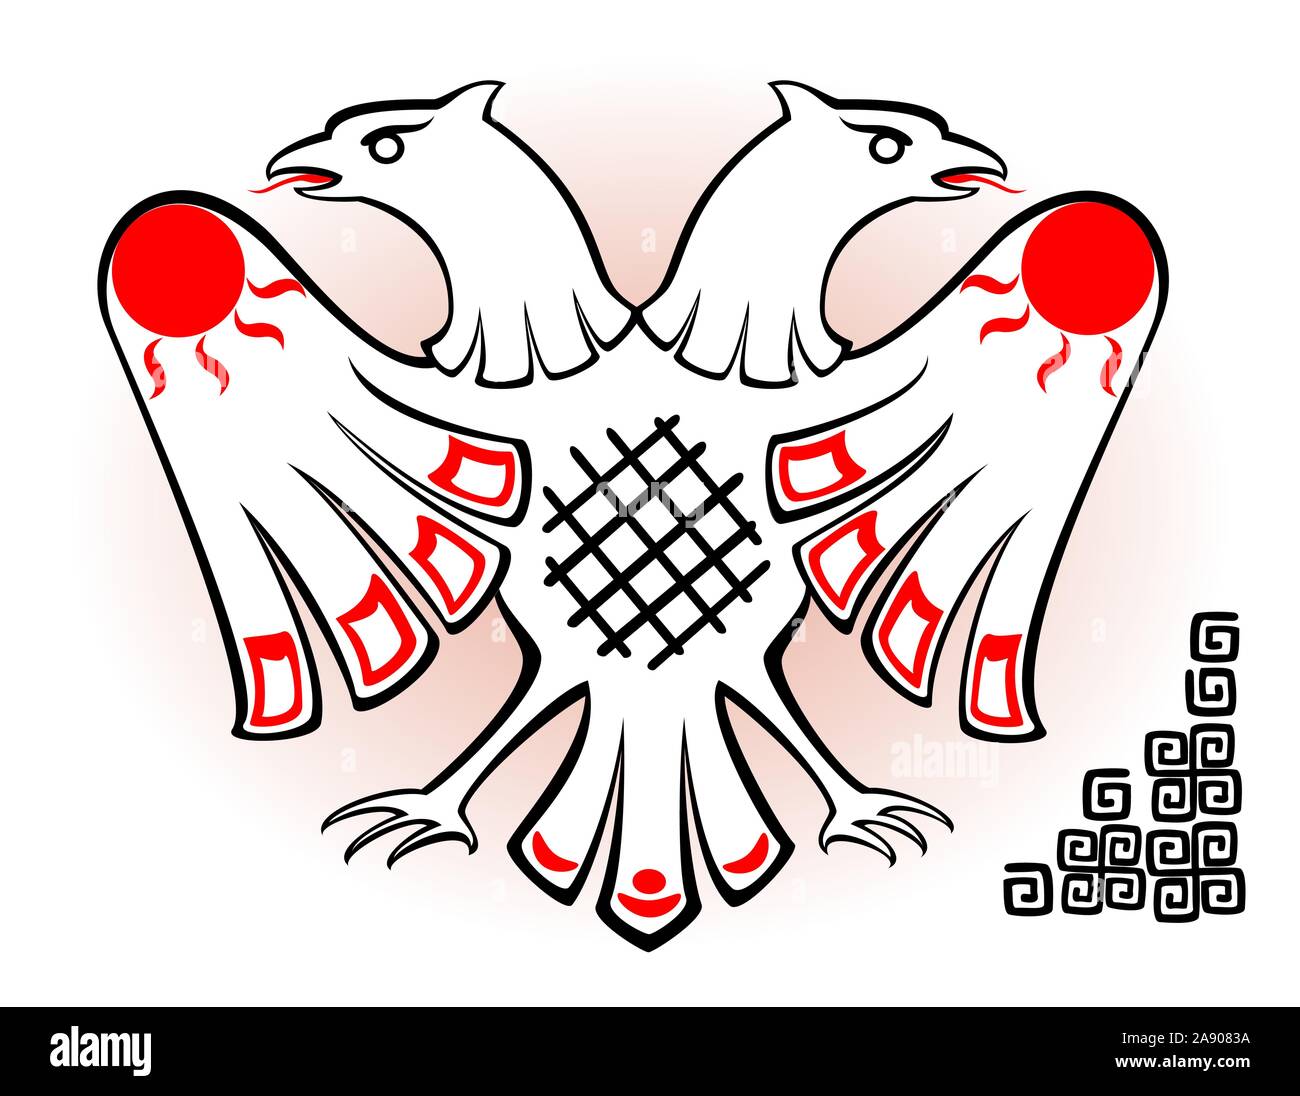 Résumé de droit de la double eagle blanc dans le style des anciens Indiens sur fond clair. EPS10 vector illustration. Illustration de Vecteur